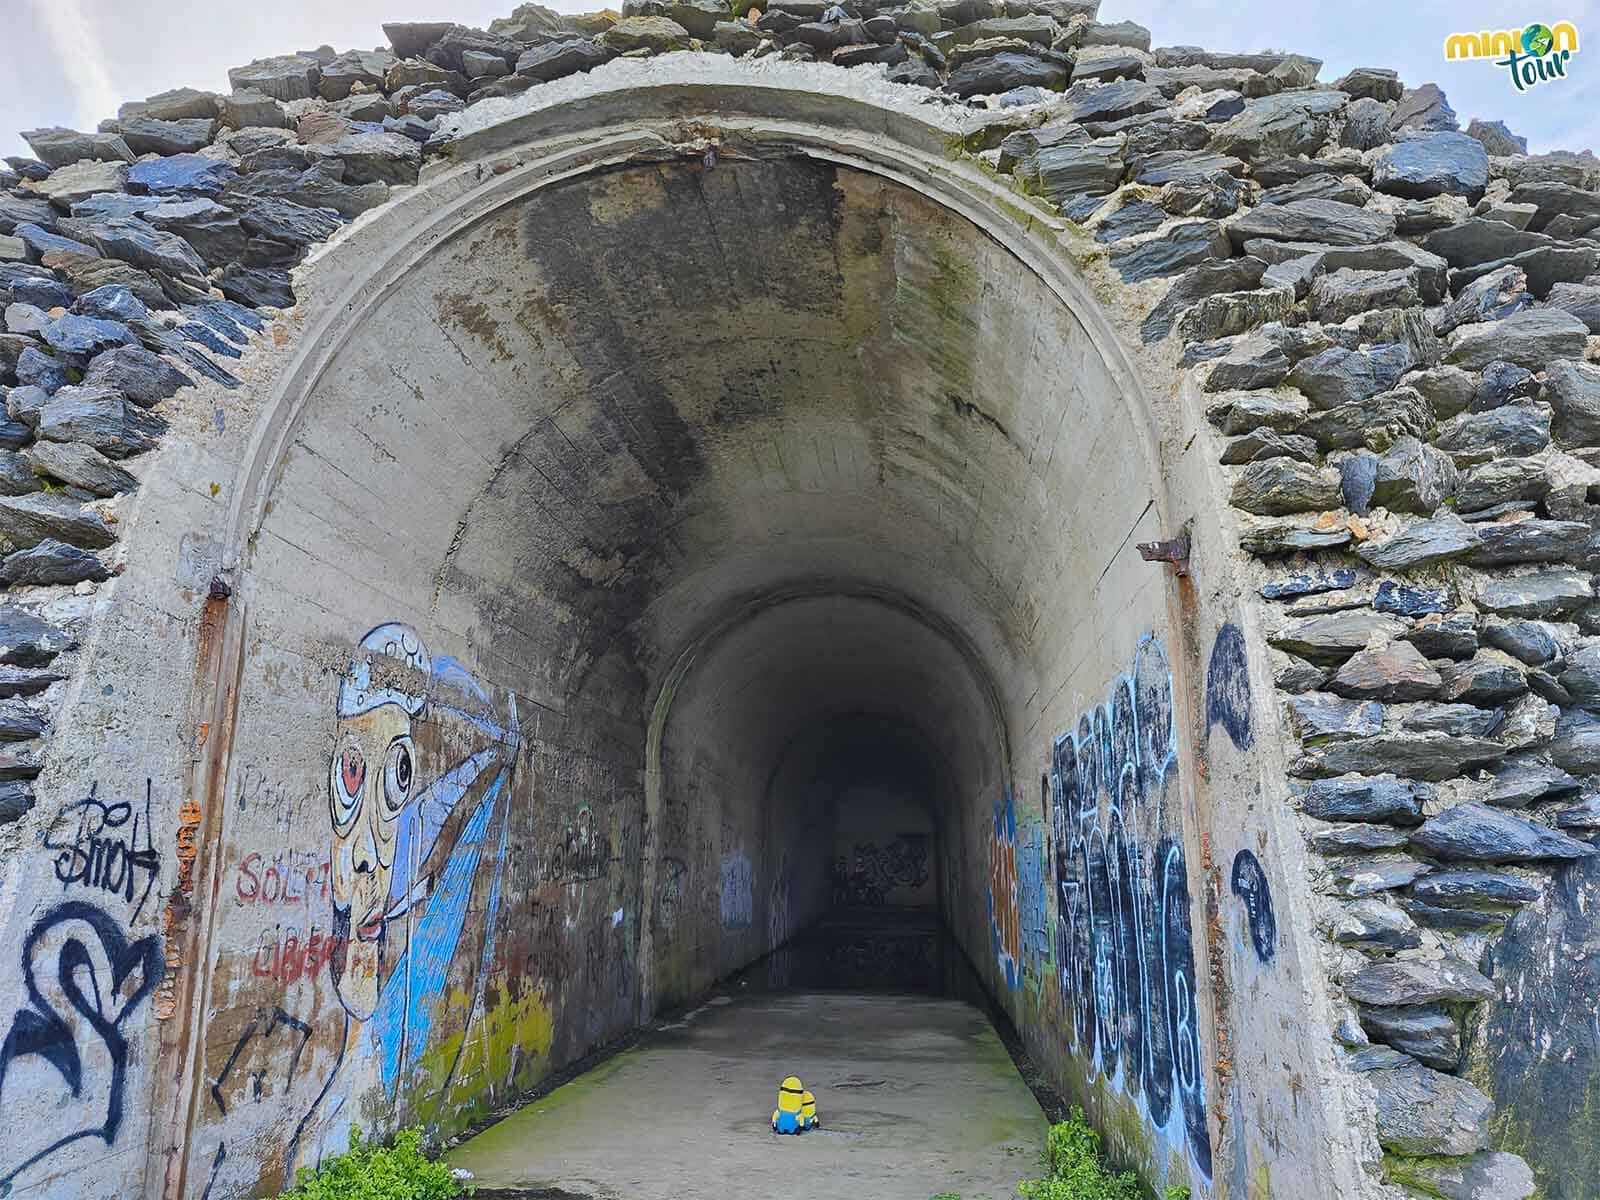 Nos hemos metido por uno de los túneles de la batería militar de Punta Frouxeira